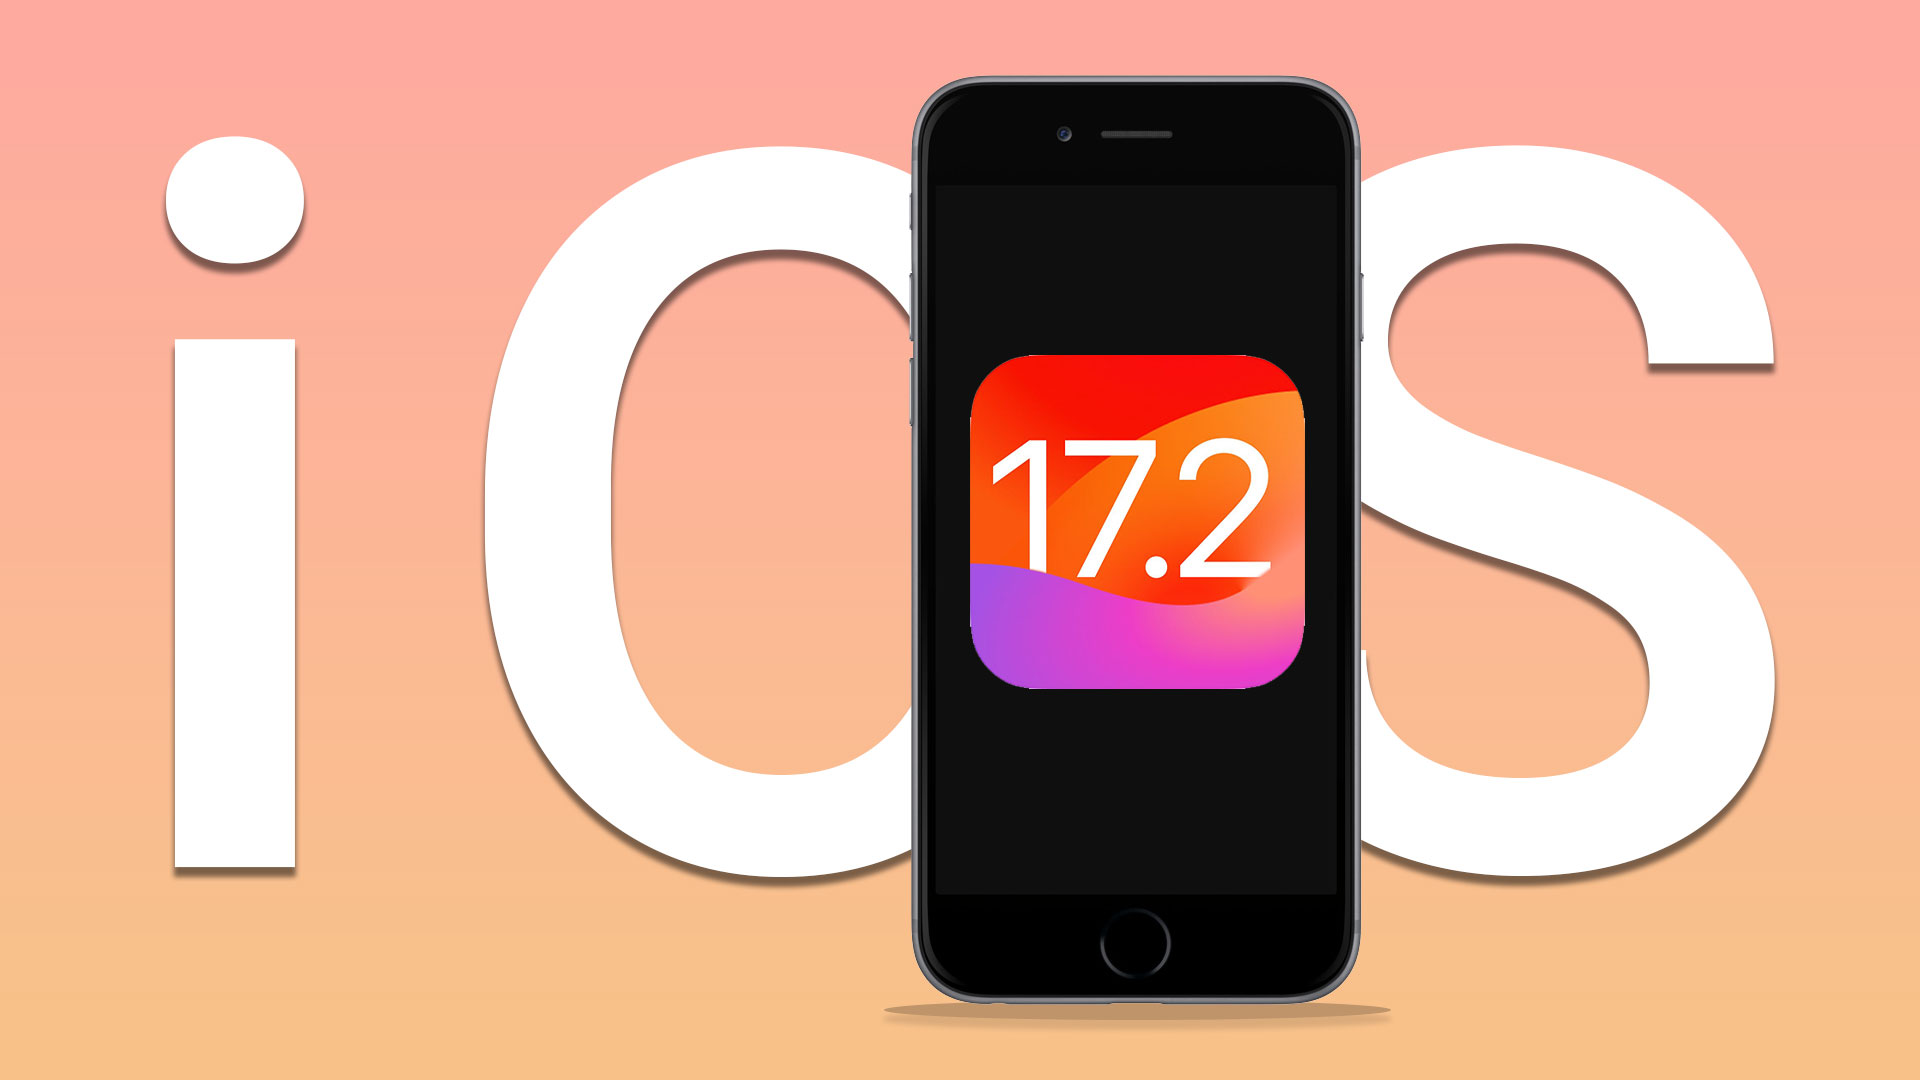 نسخه نهایی iOS 17.2